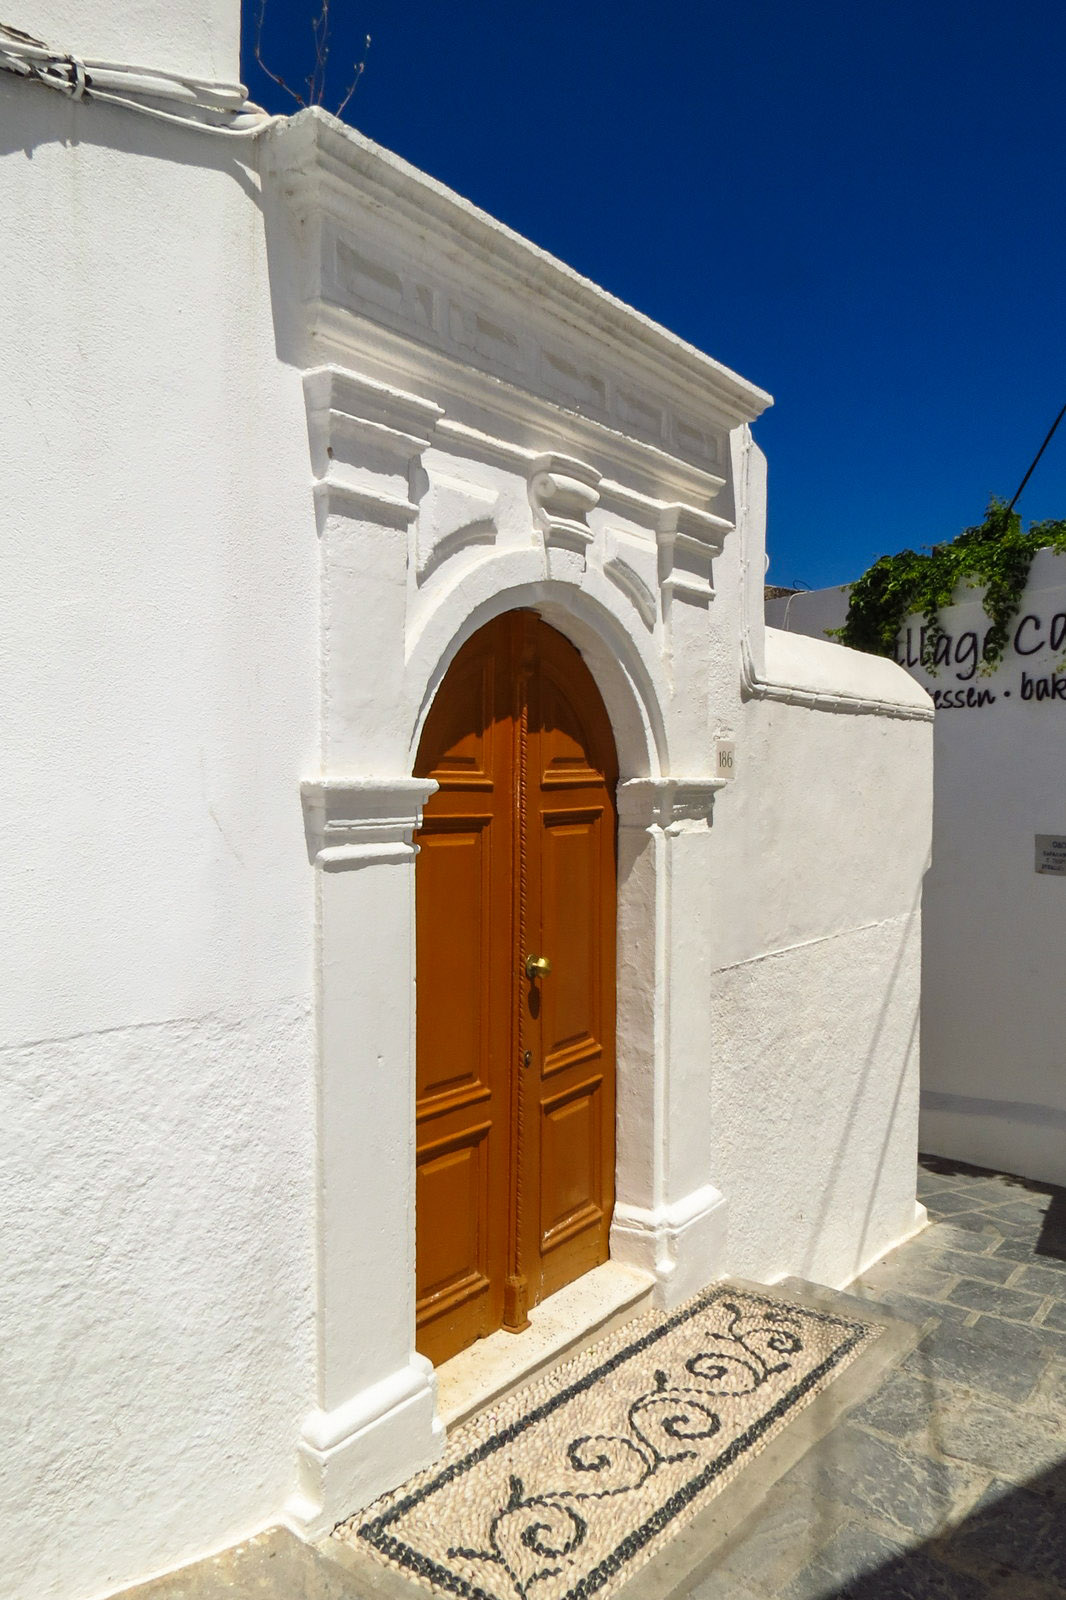 lindos-entrance-door